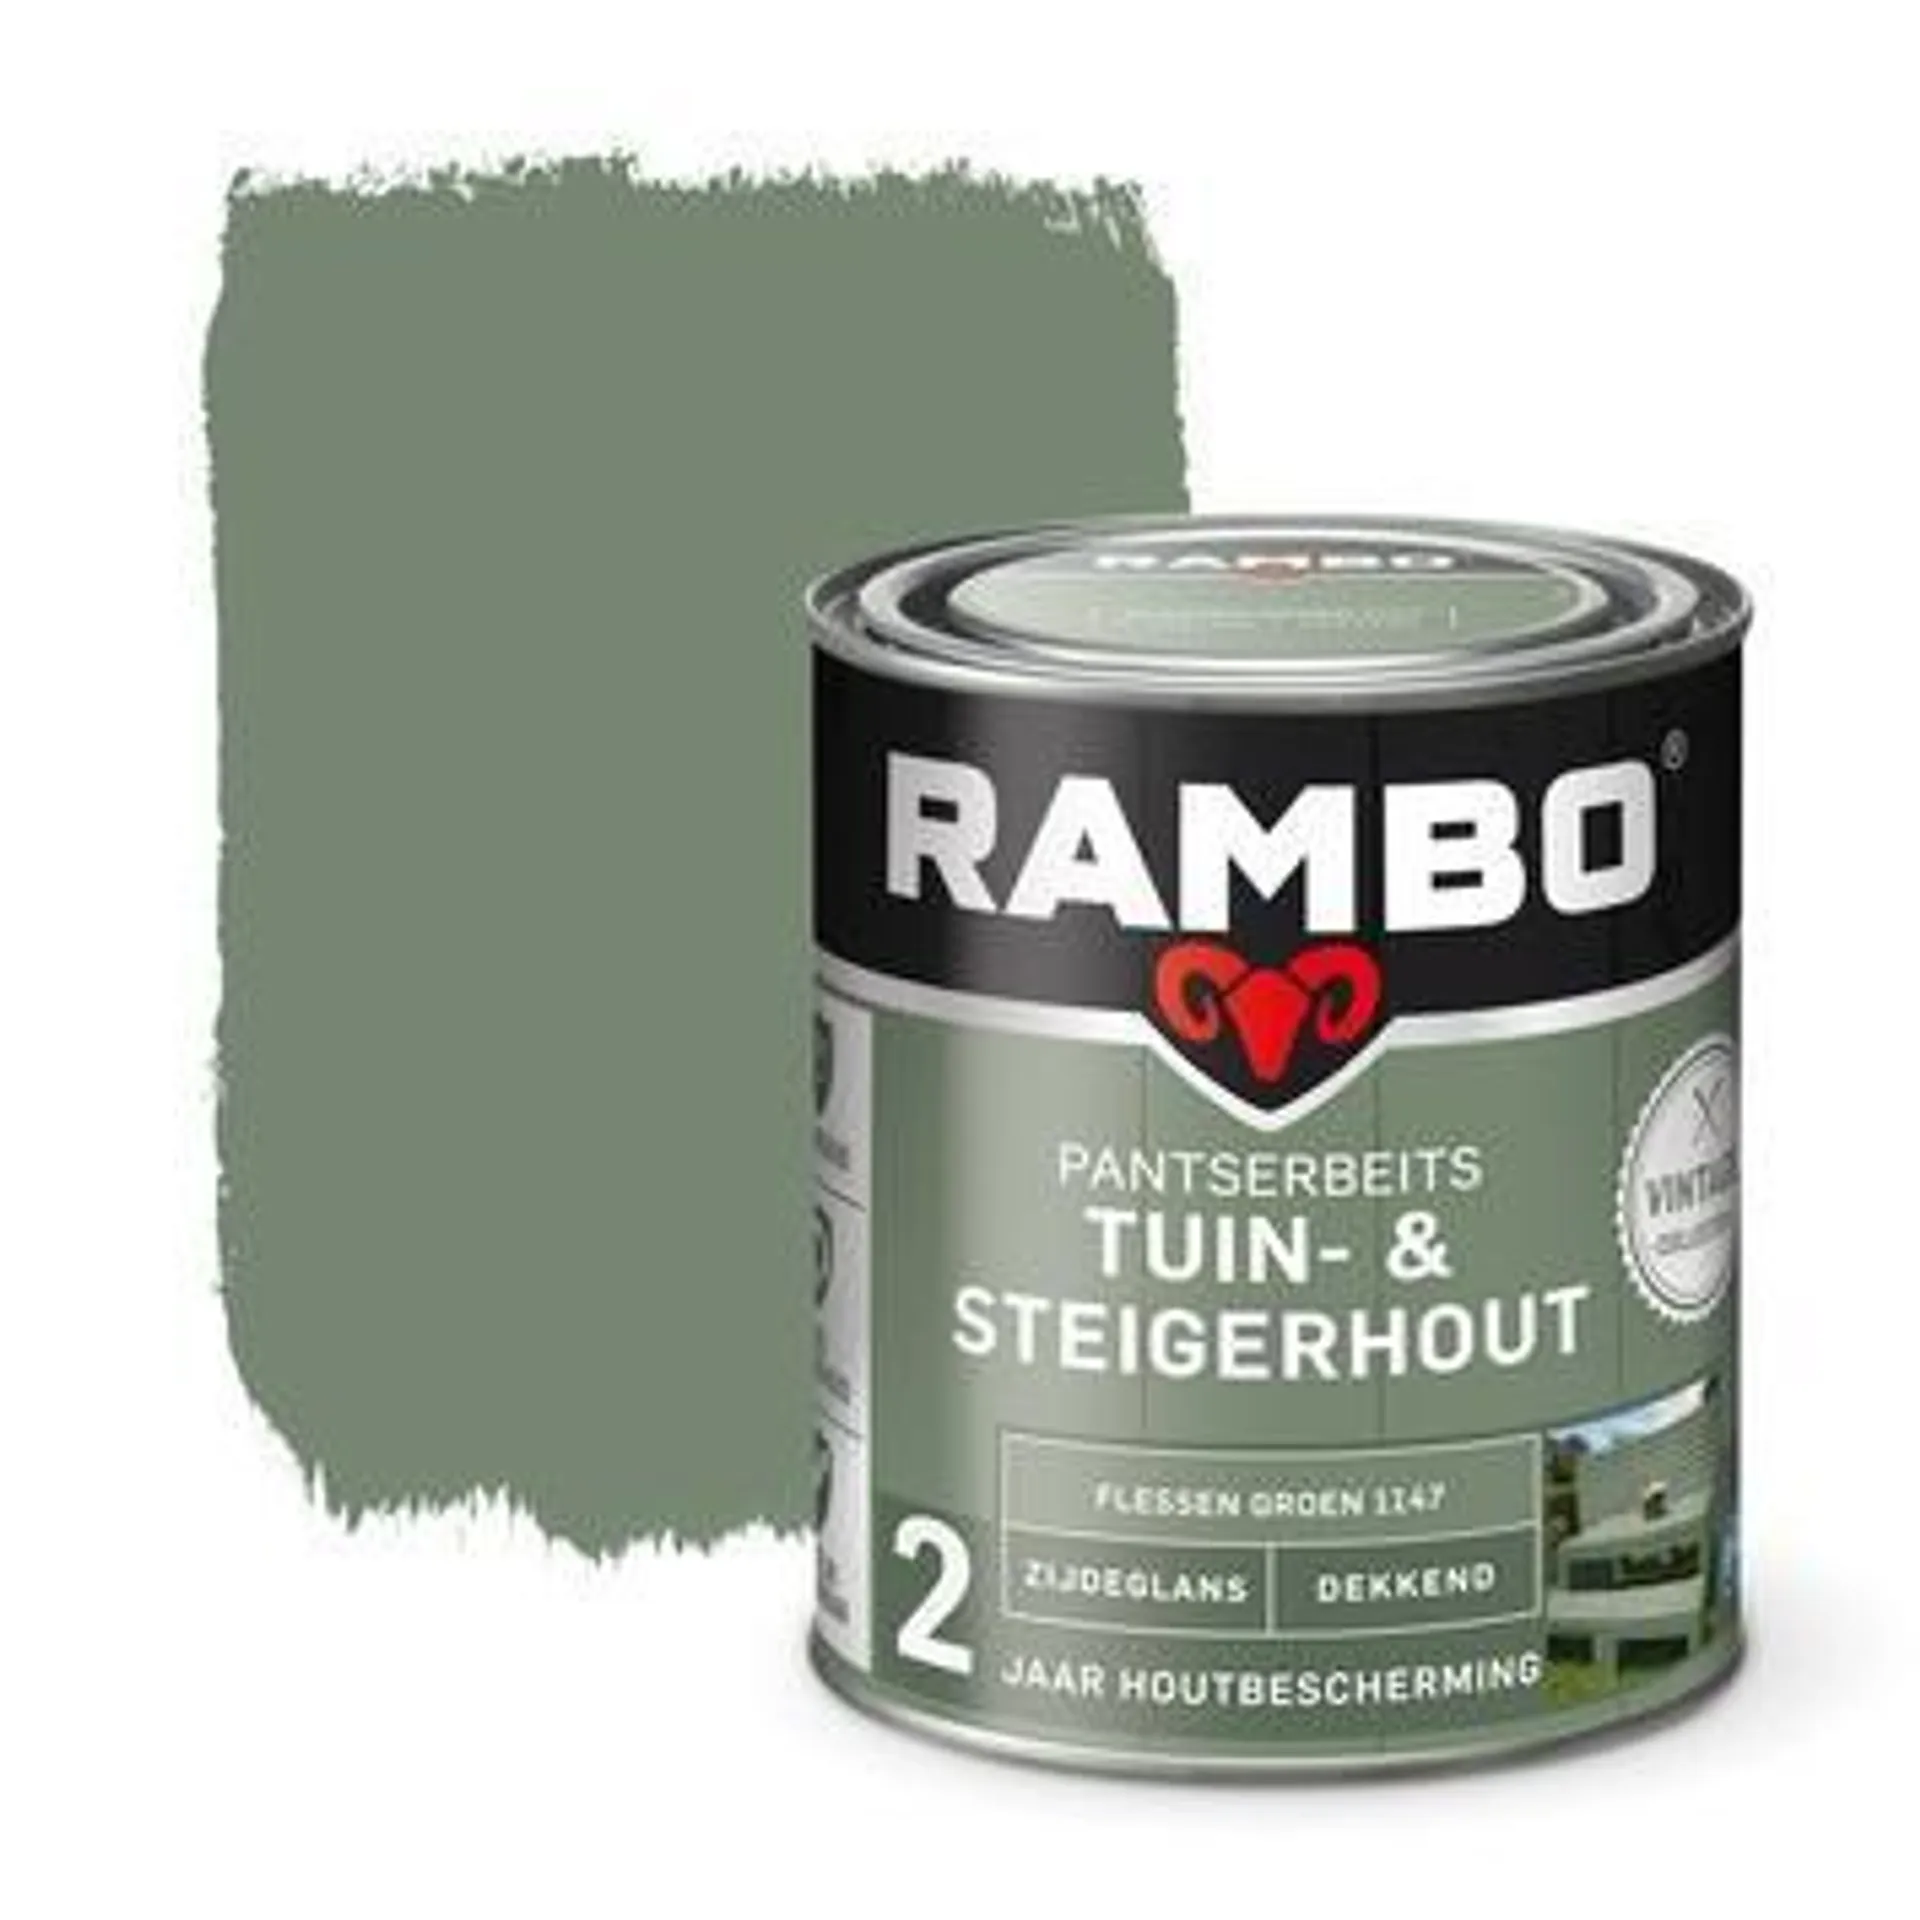 Rambo pantserbeits vintage tuin- en steigerhout flessen groen 750 ml